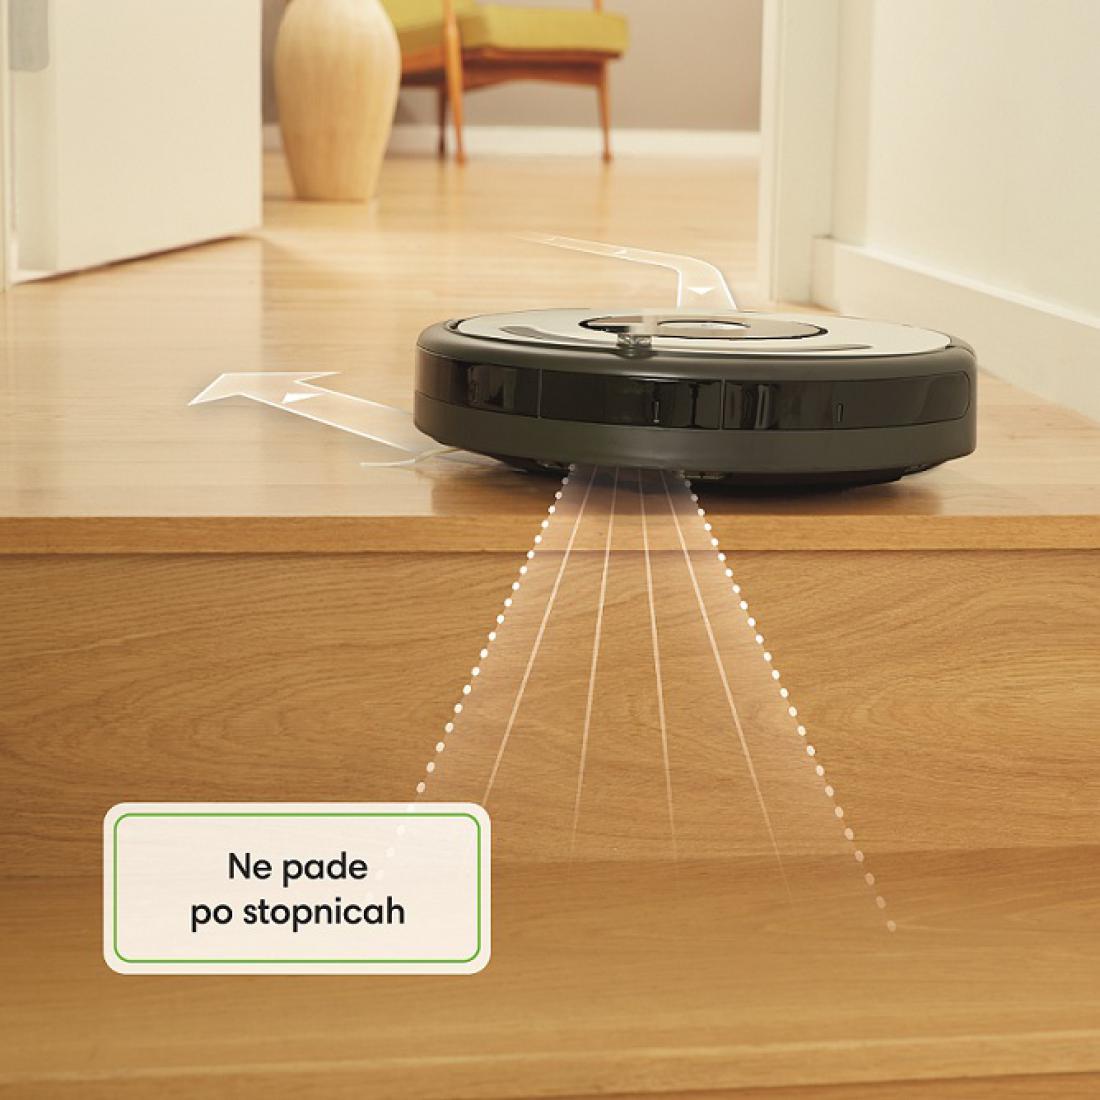 10 razlogov, zakaj izbrati robotski sesalnik iRobot® Roomba®